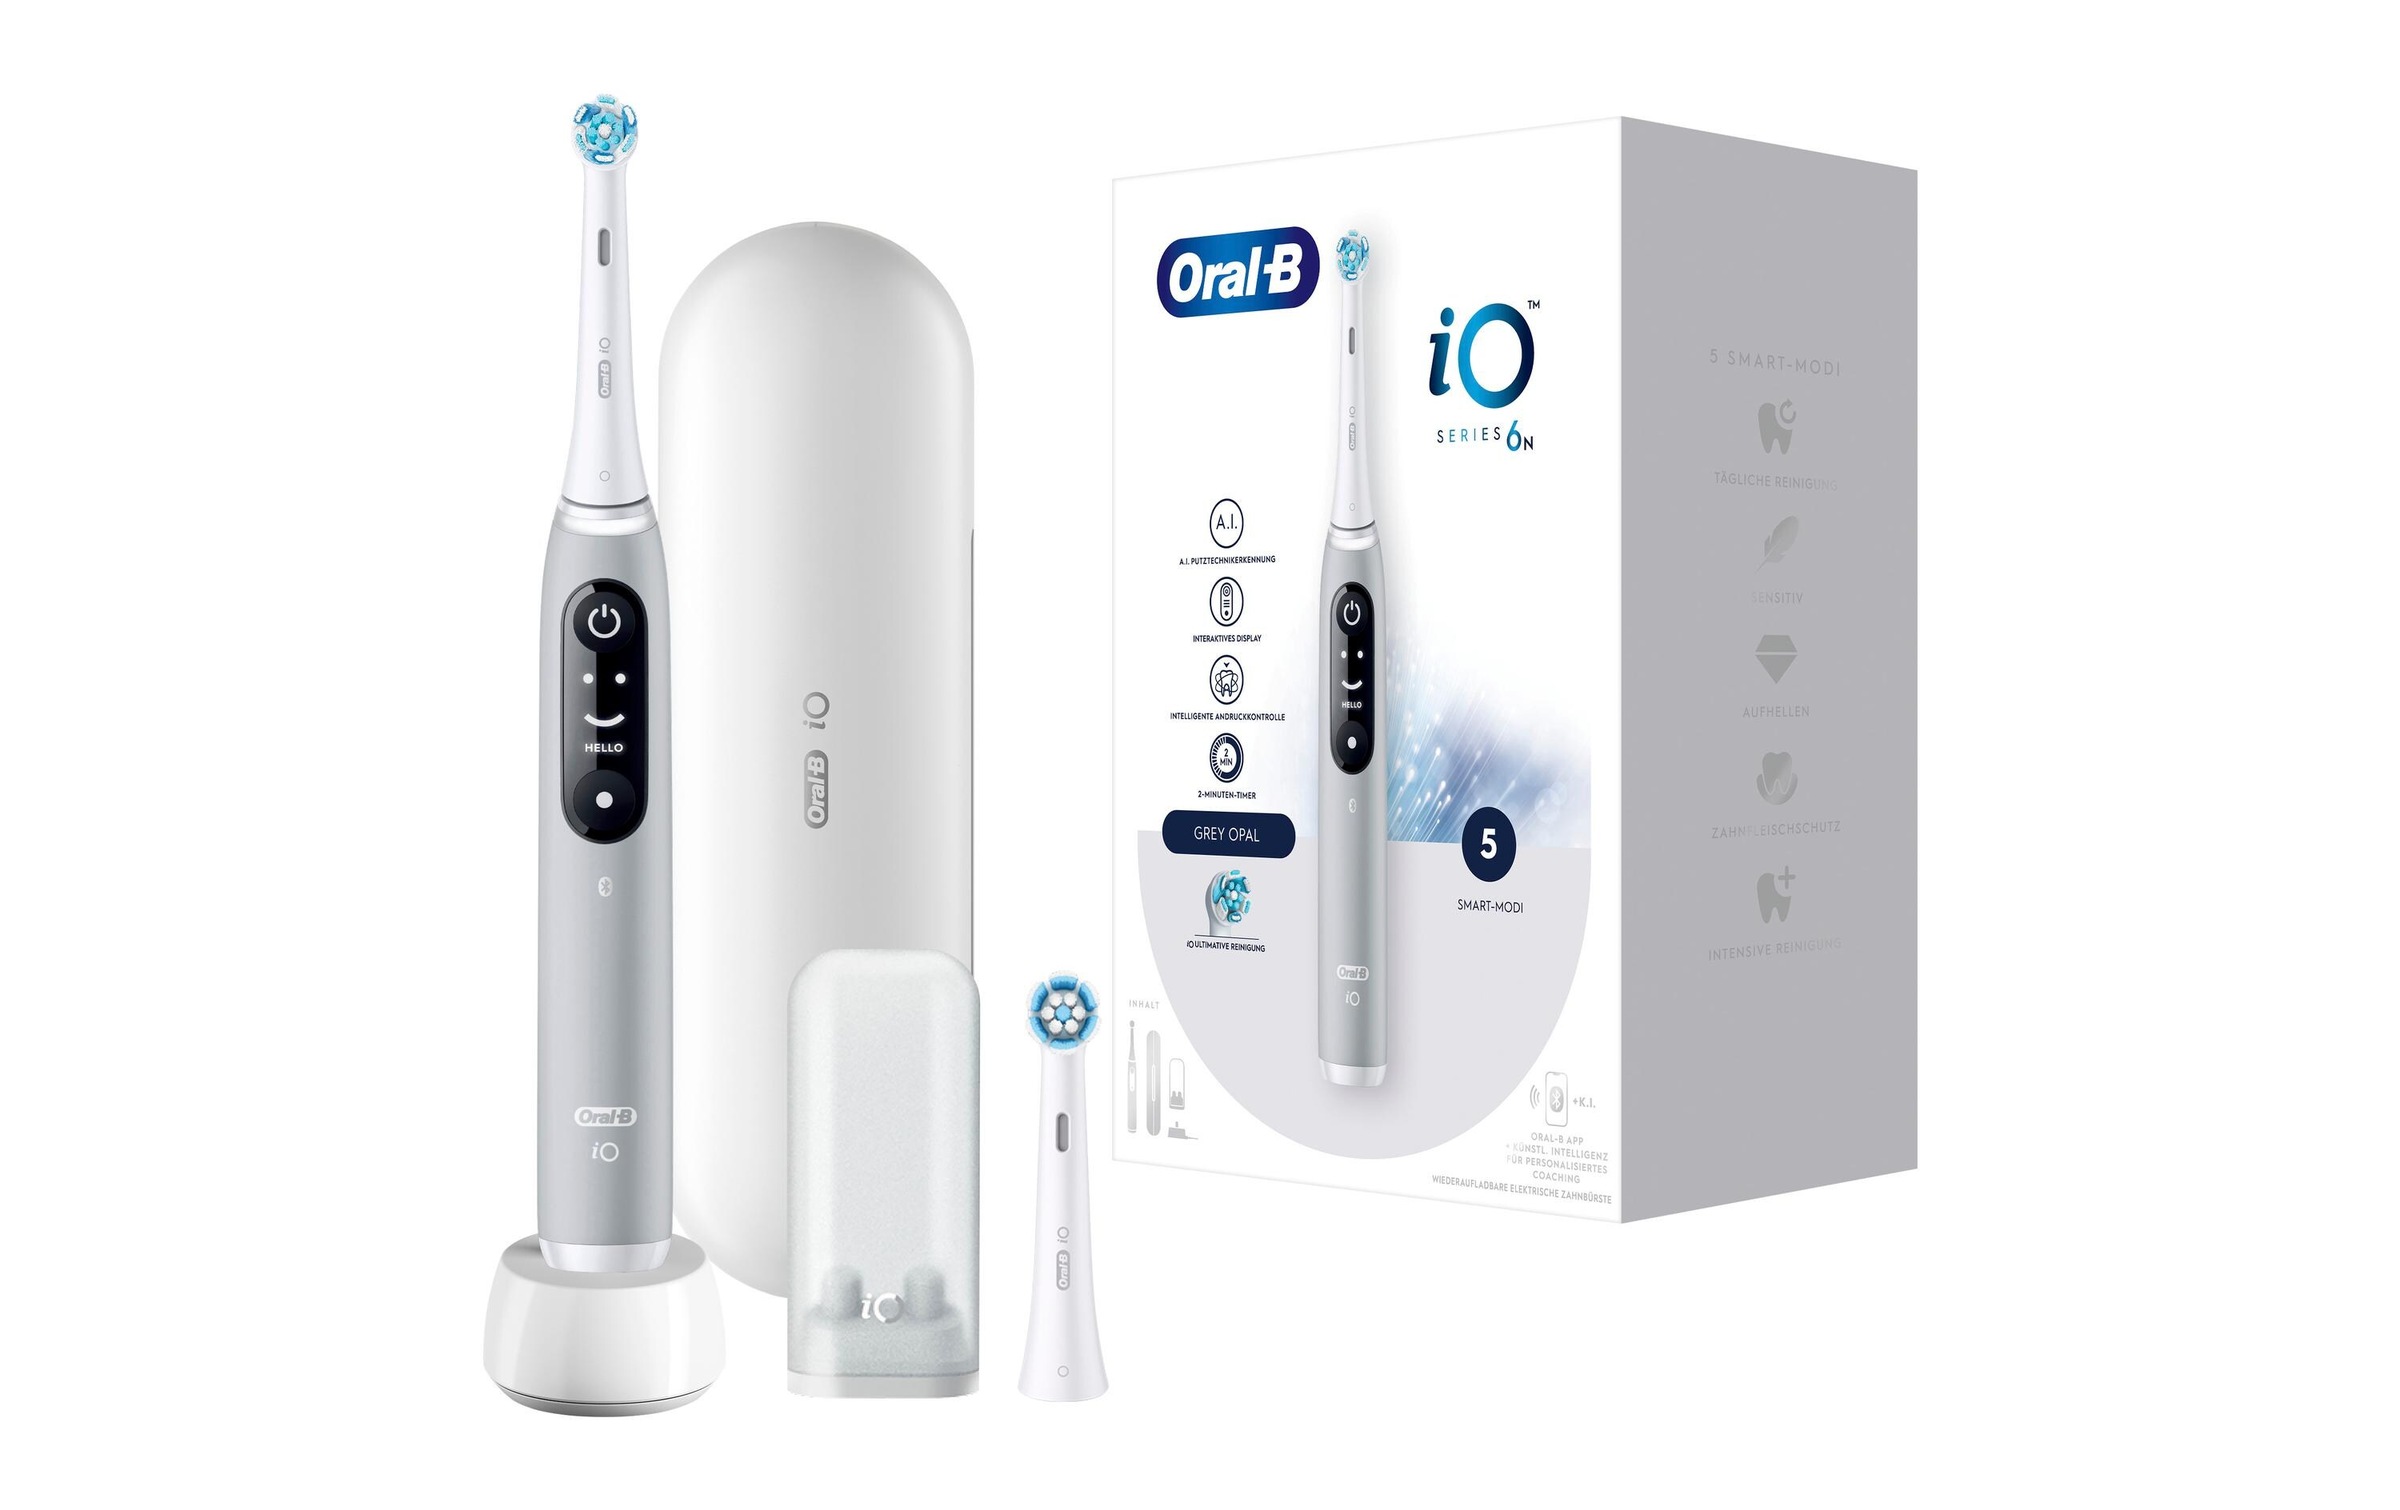 Oral-B Elektrische Zahnbürste »iO Series 6 Grey Opal«